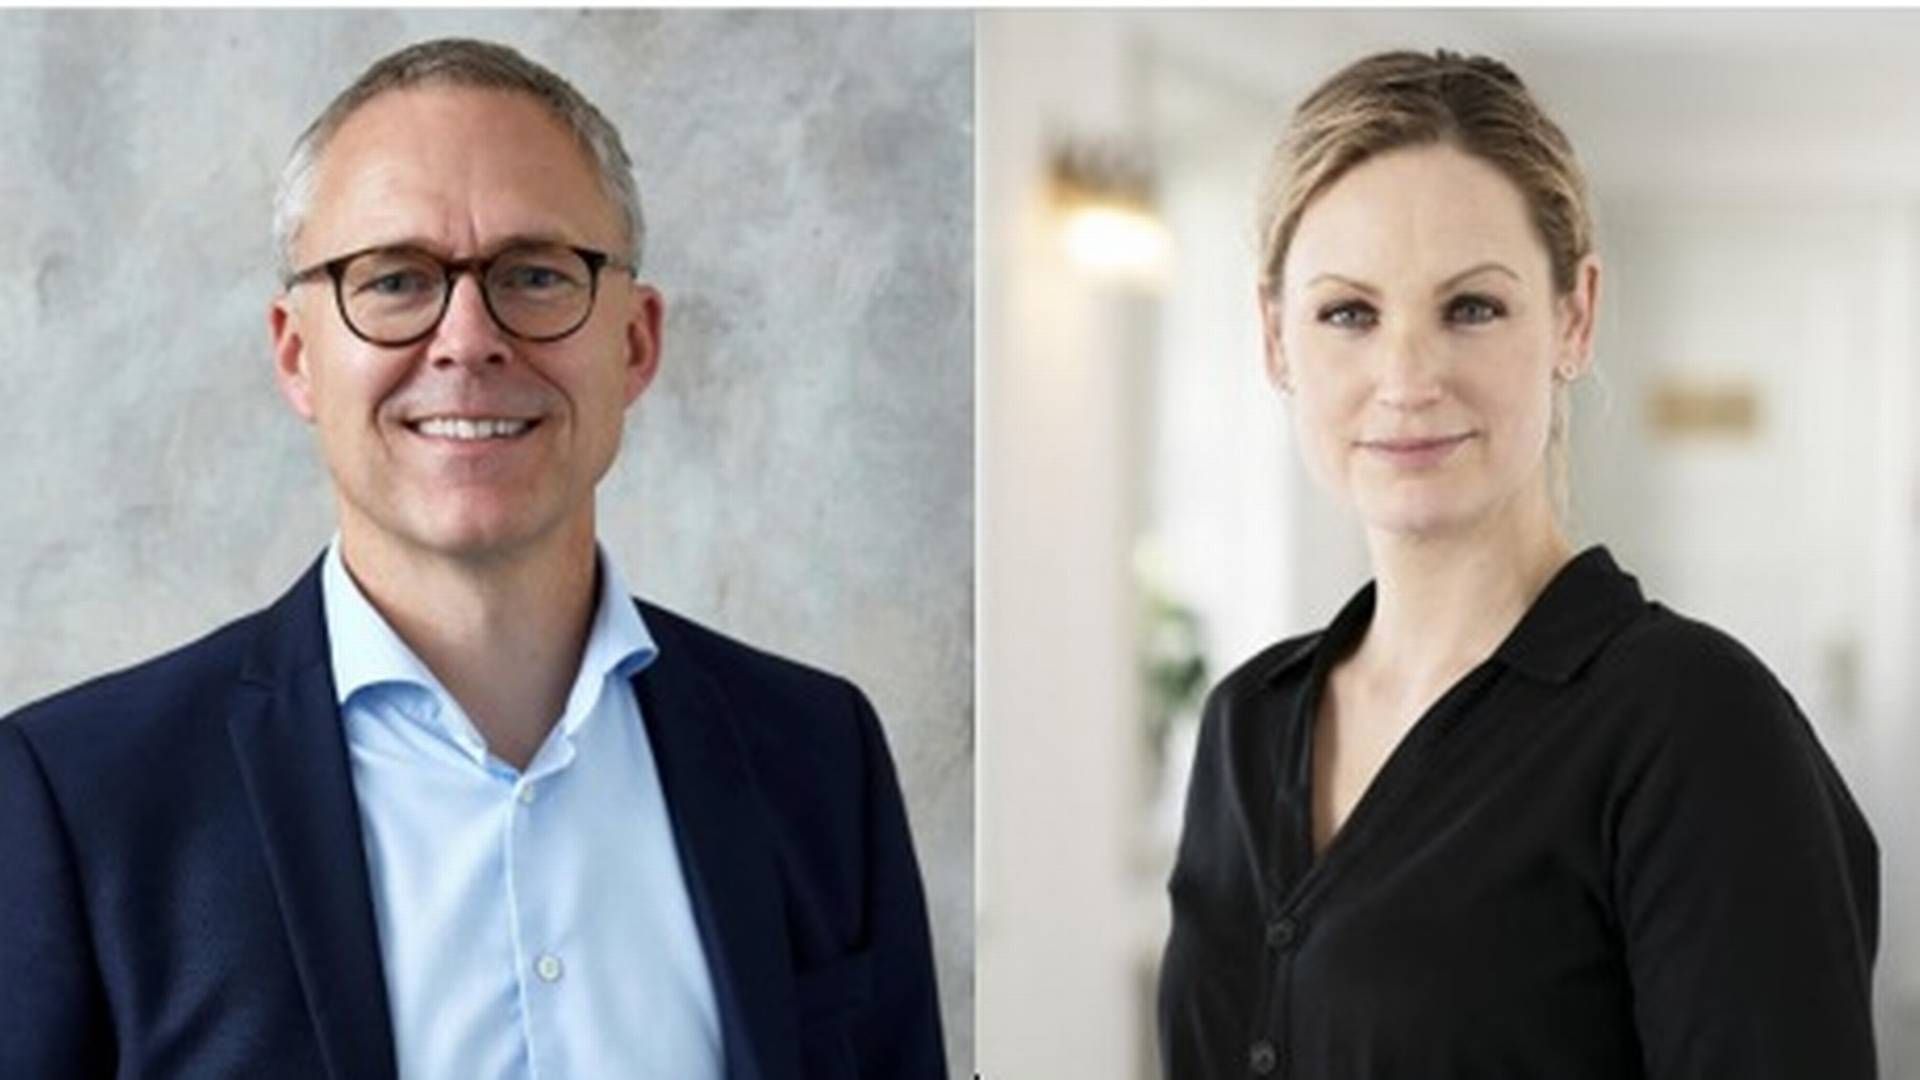 Adm. direktør for OK indtræder som næstformand i Coop Danmarks bestyrelse, hvor Pernille Skipper, der er forkvinde for Coop Amba, også har plads. | Foto: PR/OK, PR/Coop